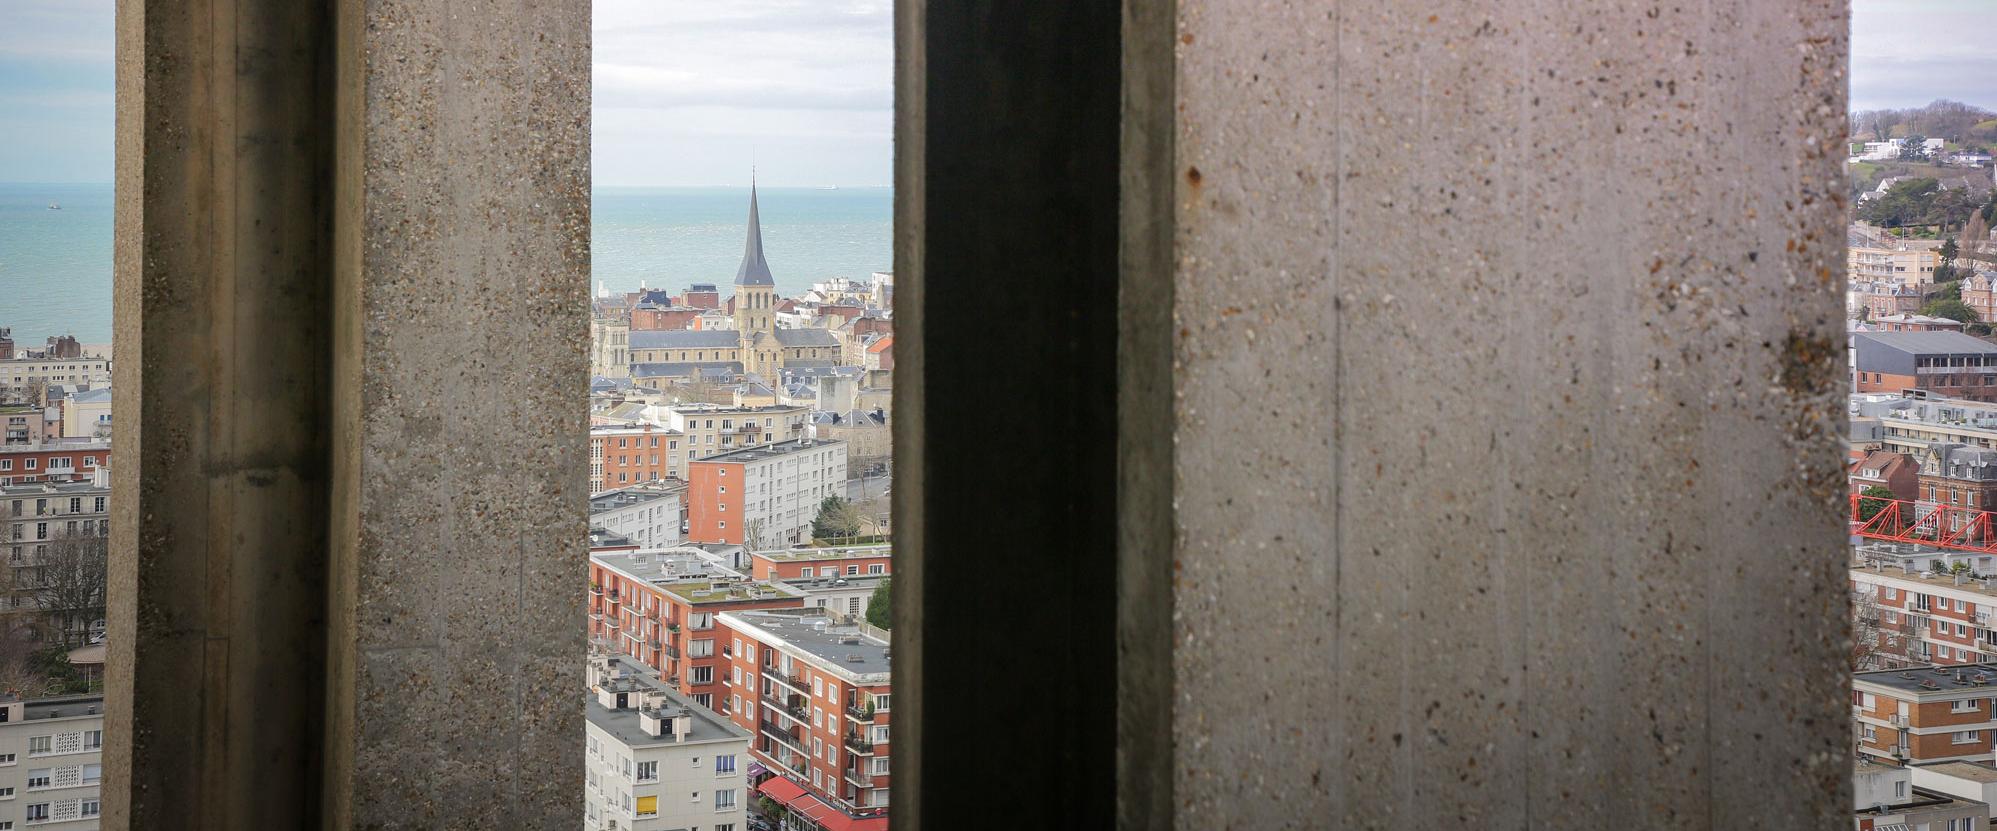 Vue depuis la tour de l'Hôtel de ville, Le Havre